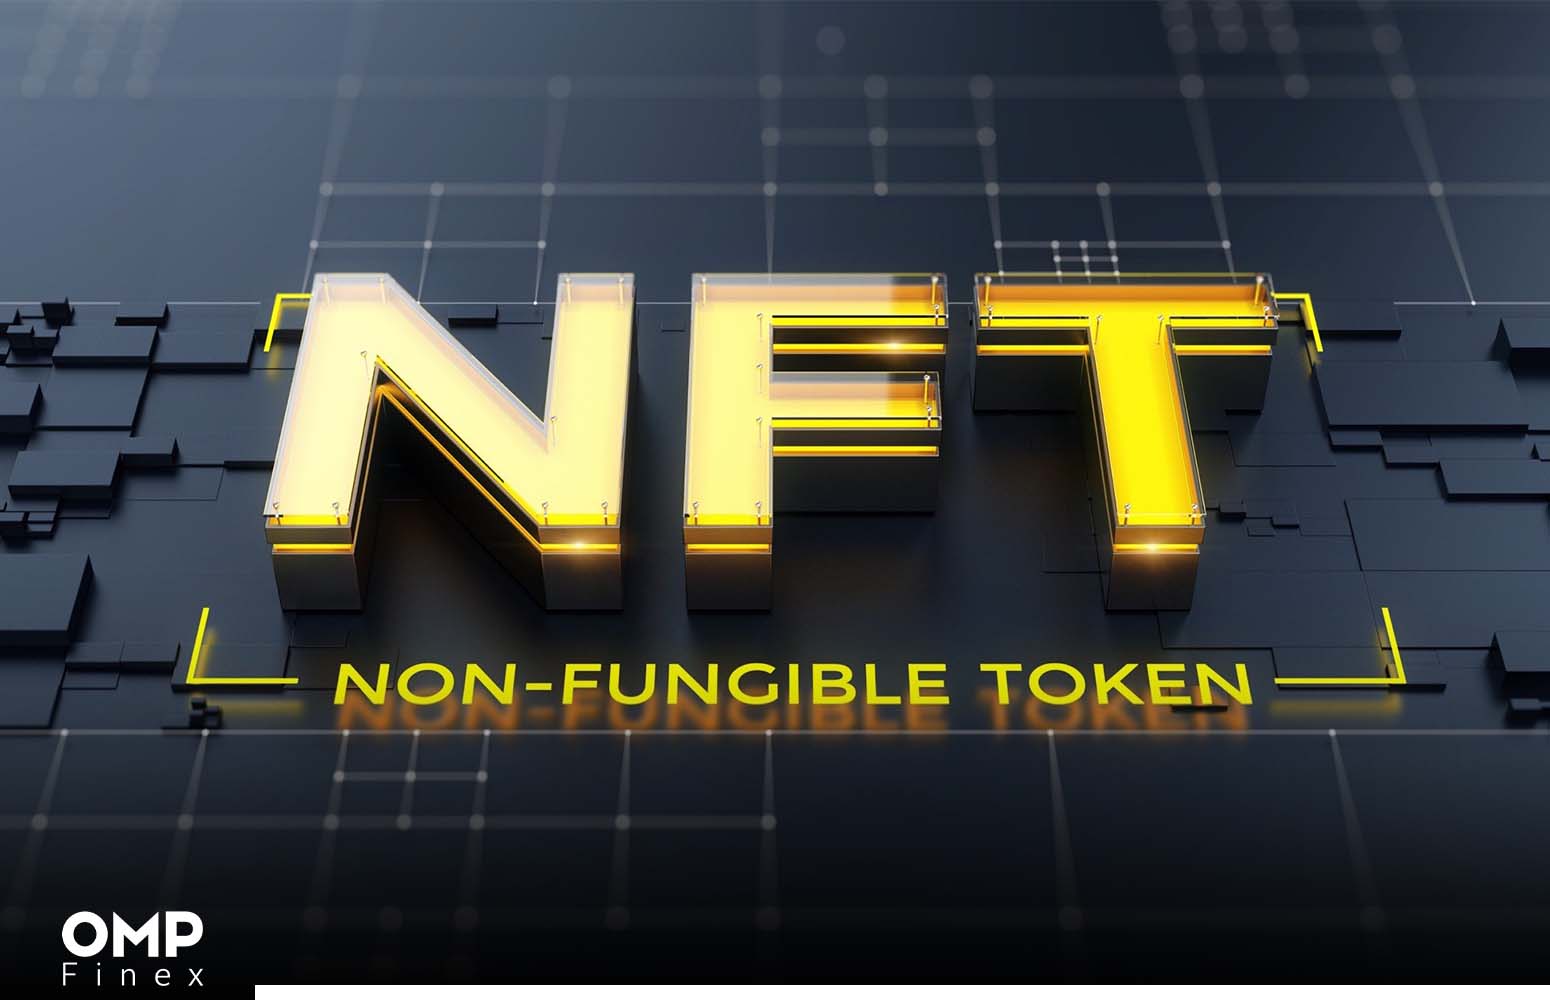 بازار NFT